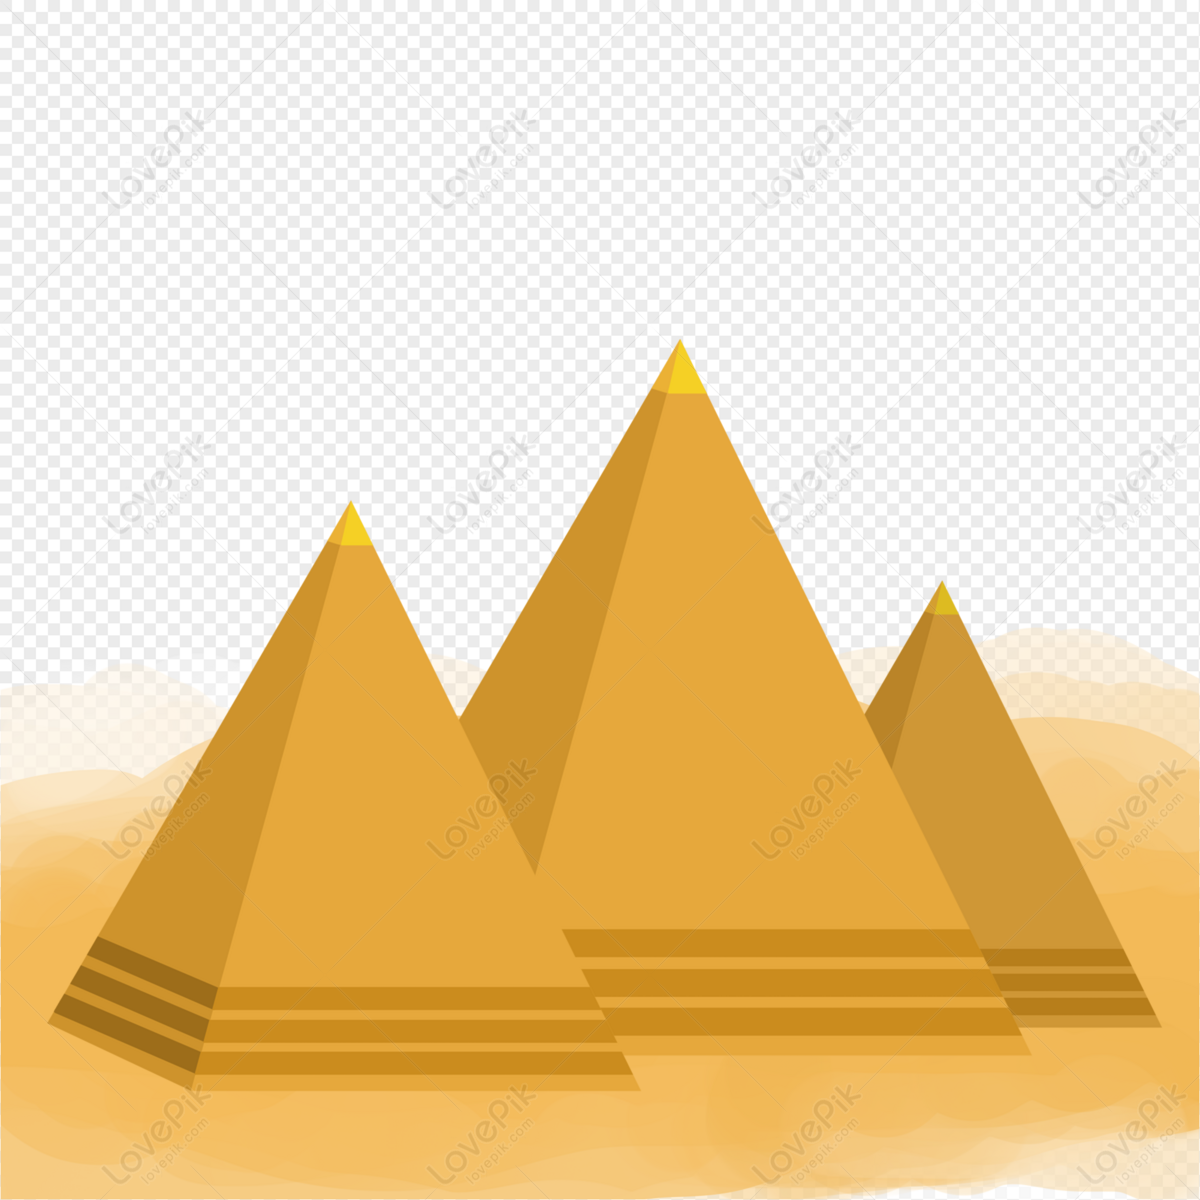 Bạn muốn trở thành một họa sĩ thực thụ và vẽ bức tranh tuyệt đẹp về kim tự tháp? Hãy bắt đầu với việc vẽ tay kim tự tháp. Với các nét vẽ đơn giản và cách thức vẽ chi tiết, bạn sẽ tạo ra một tác phẩm đẹp như mơ.